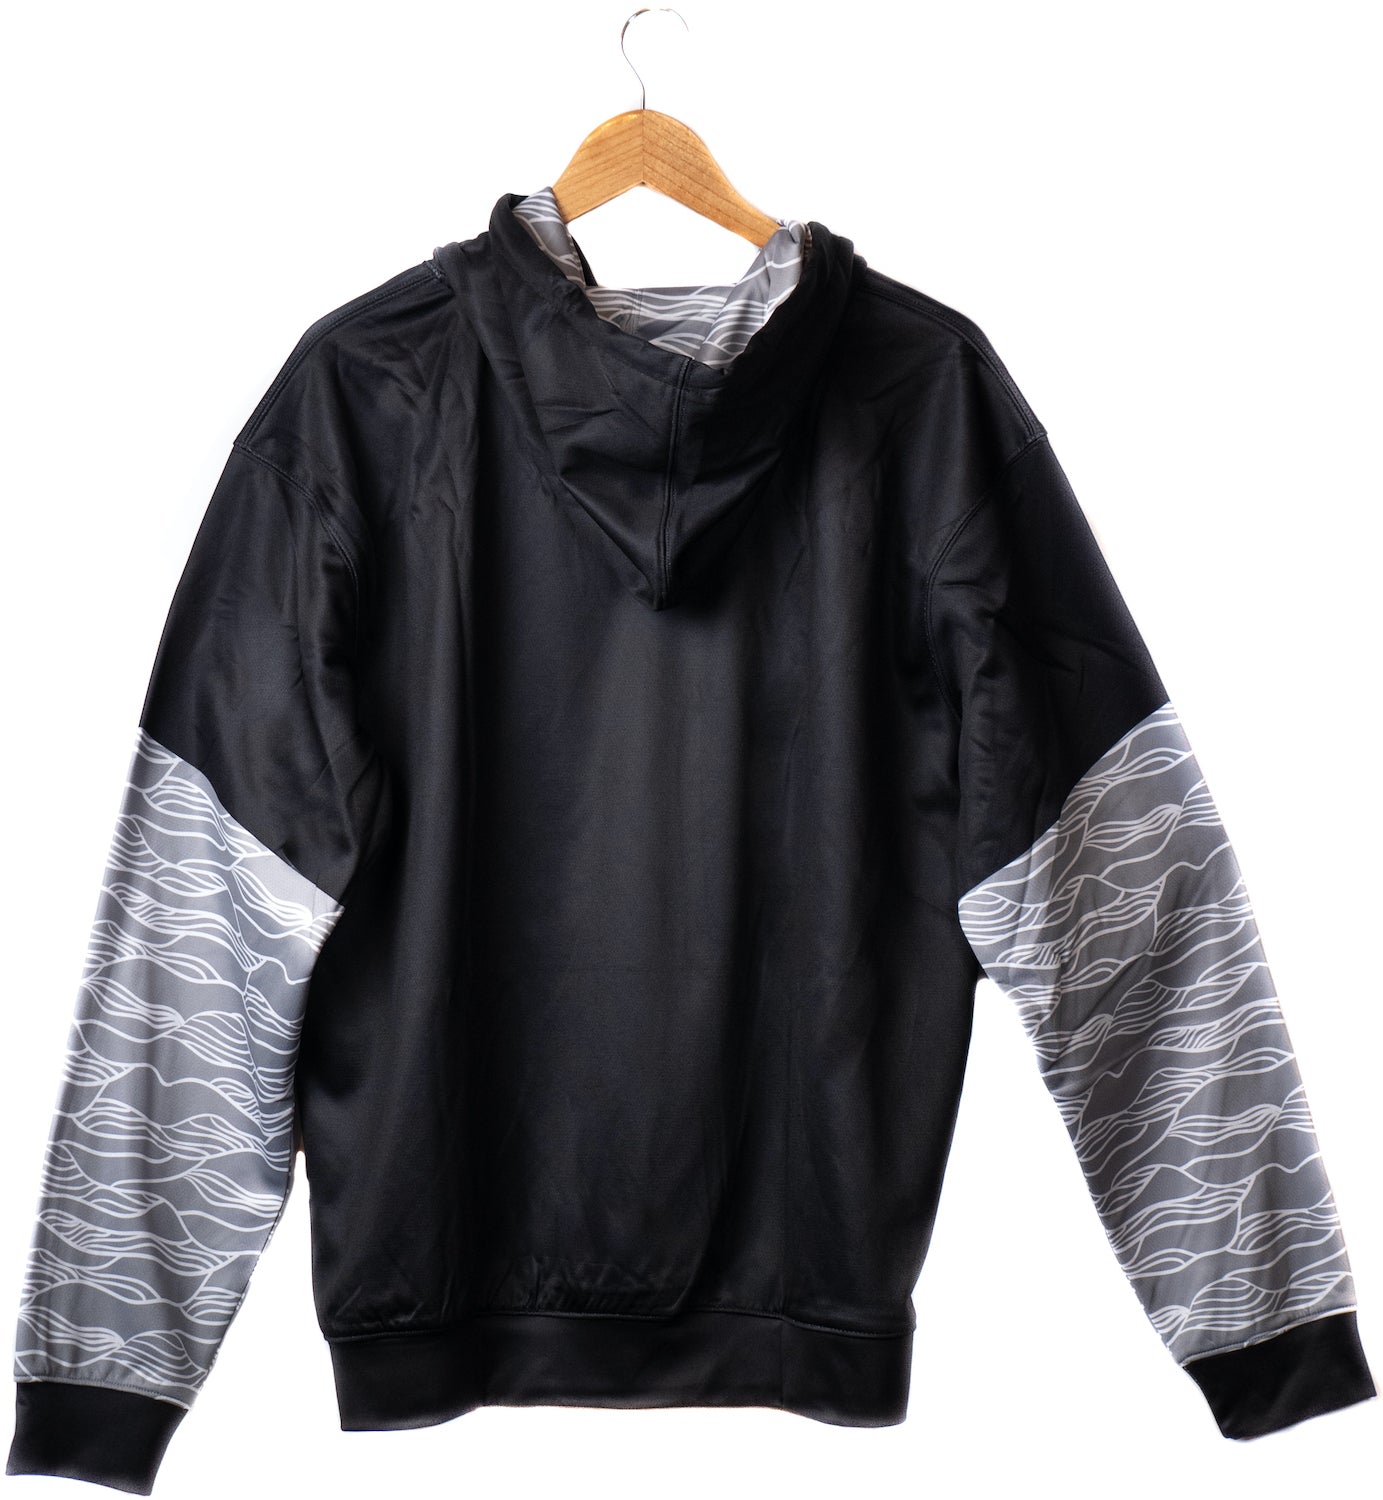 "Waves" design, Black hoodie, back